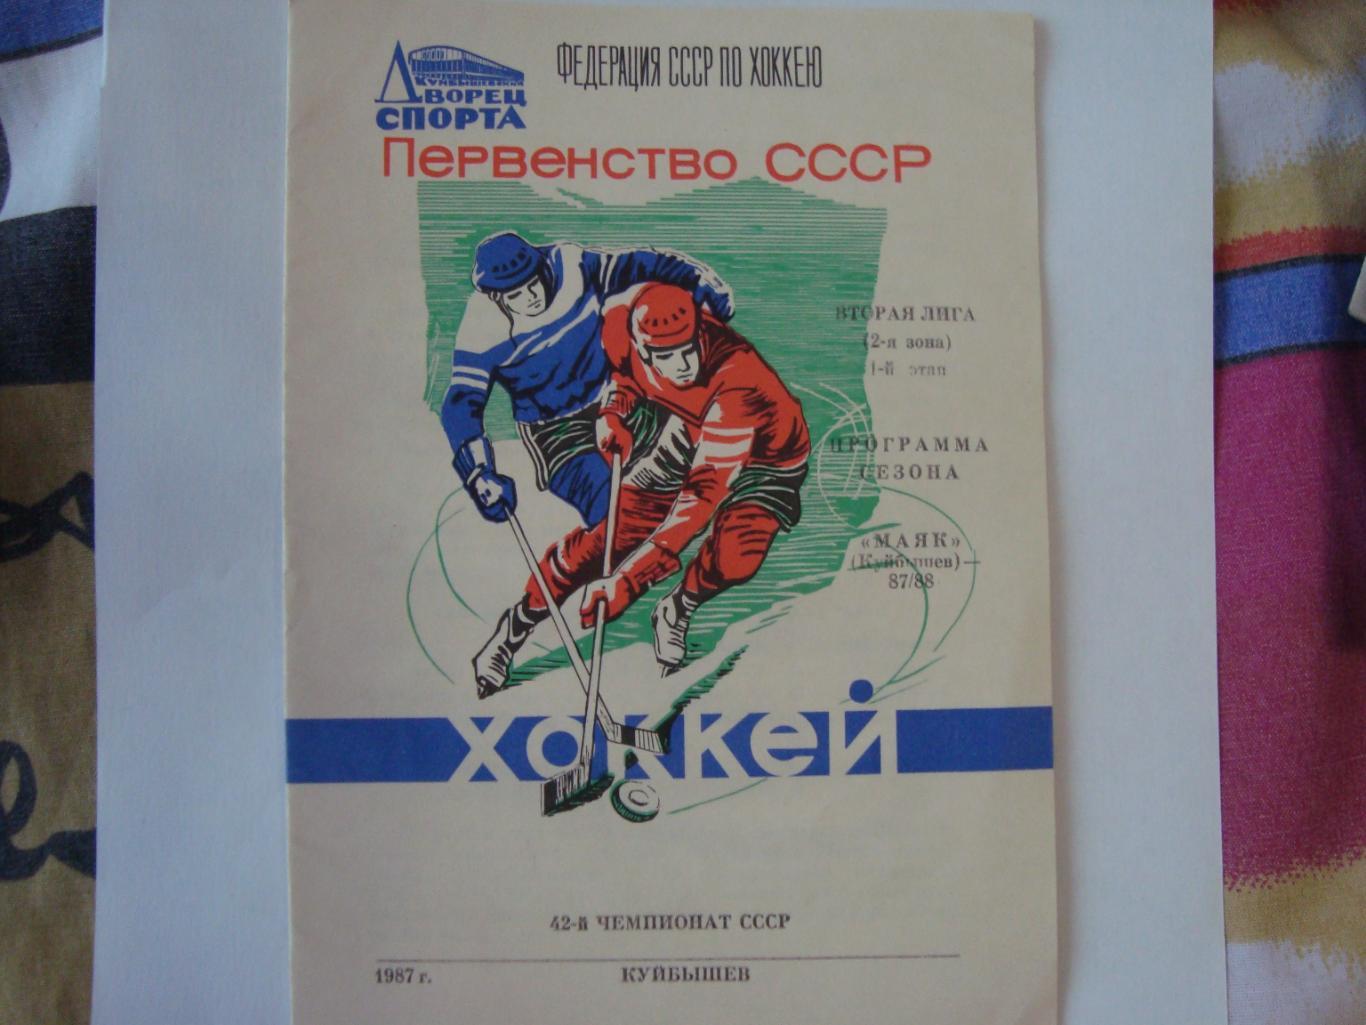 Хоккей. Программа сезона. 1-й этап. Куйбышев. 1987/88